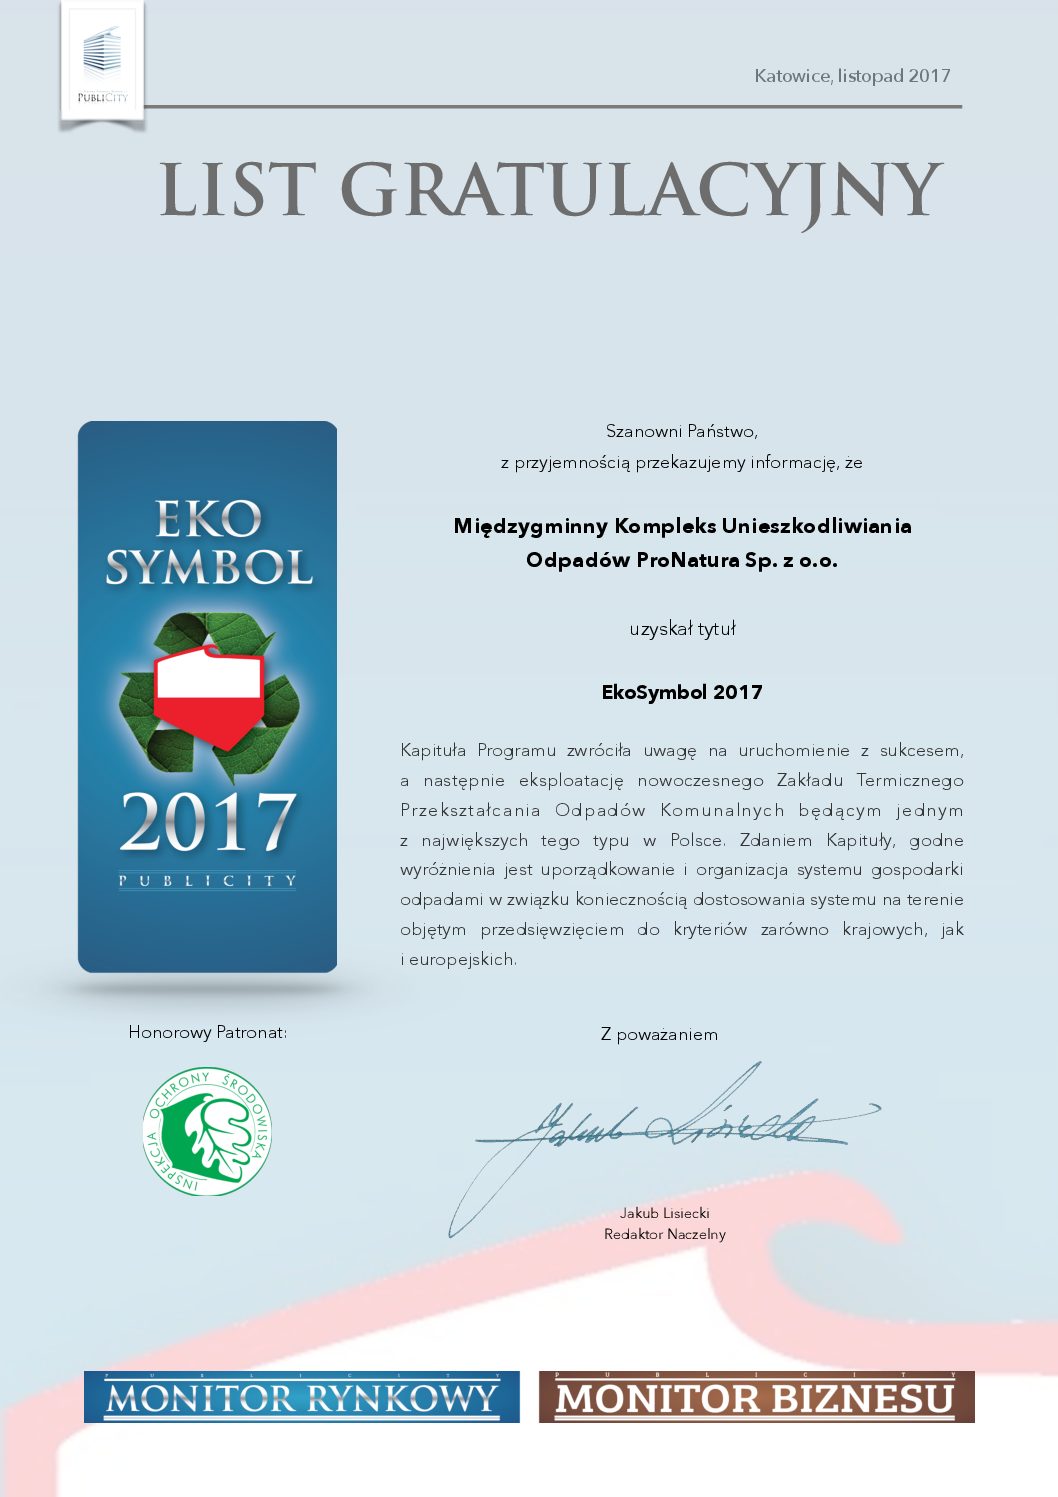 ProNatura wyróżniona EkoSymbolem 2017